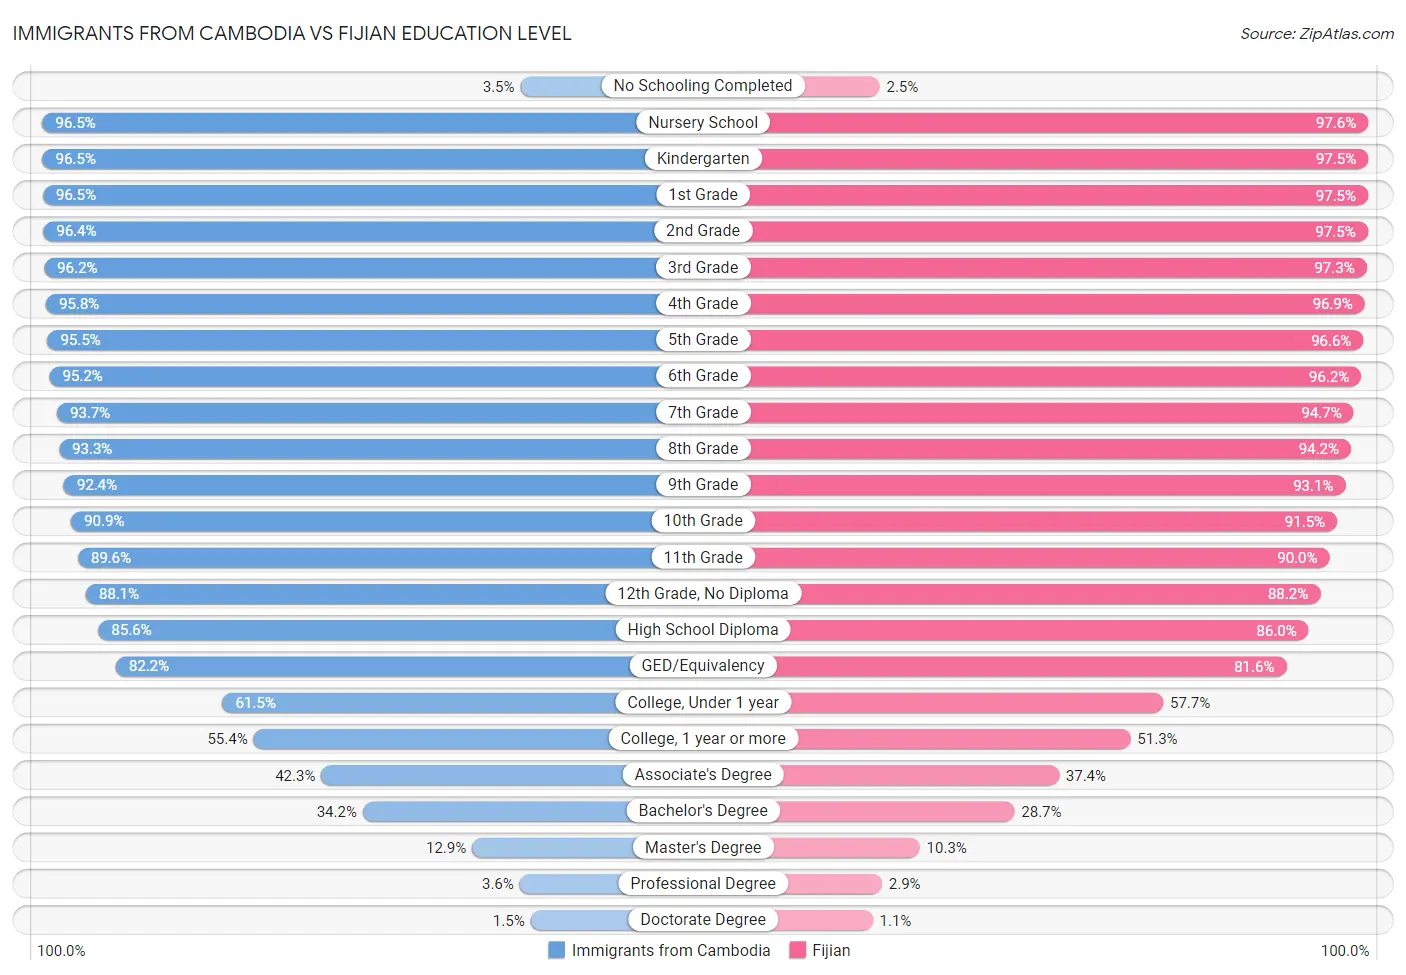 Immigrants from Cambodia vs Fijian Education Level